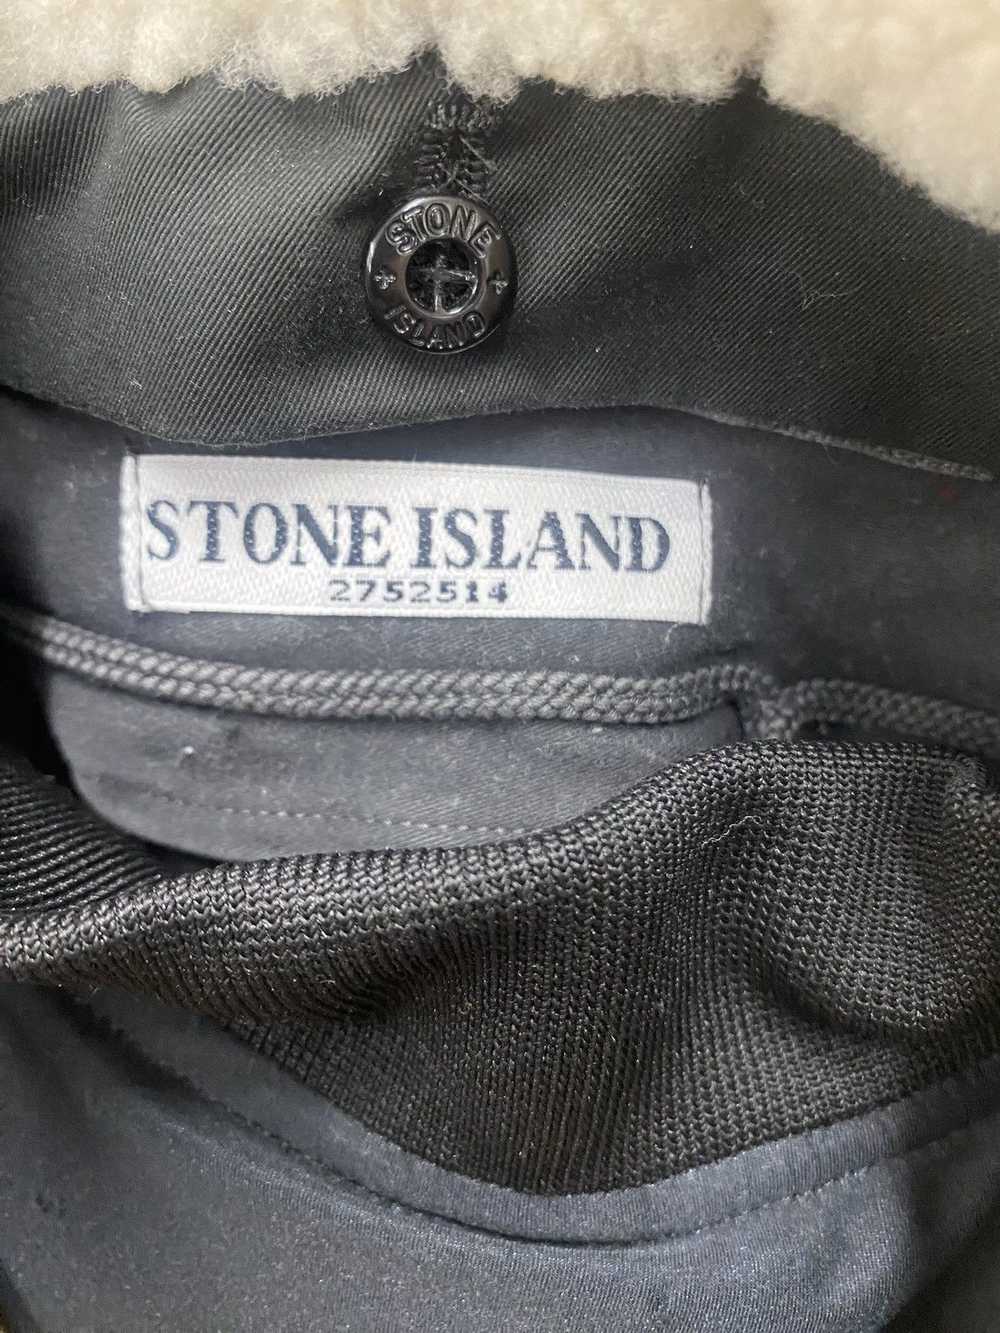 Stone Island Stone Island Peacoat Jacket - image 3